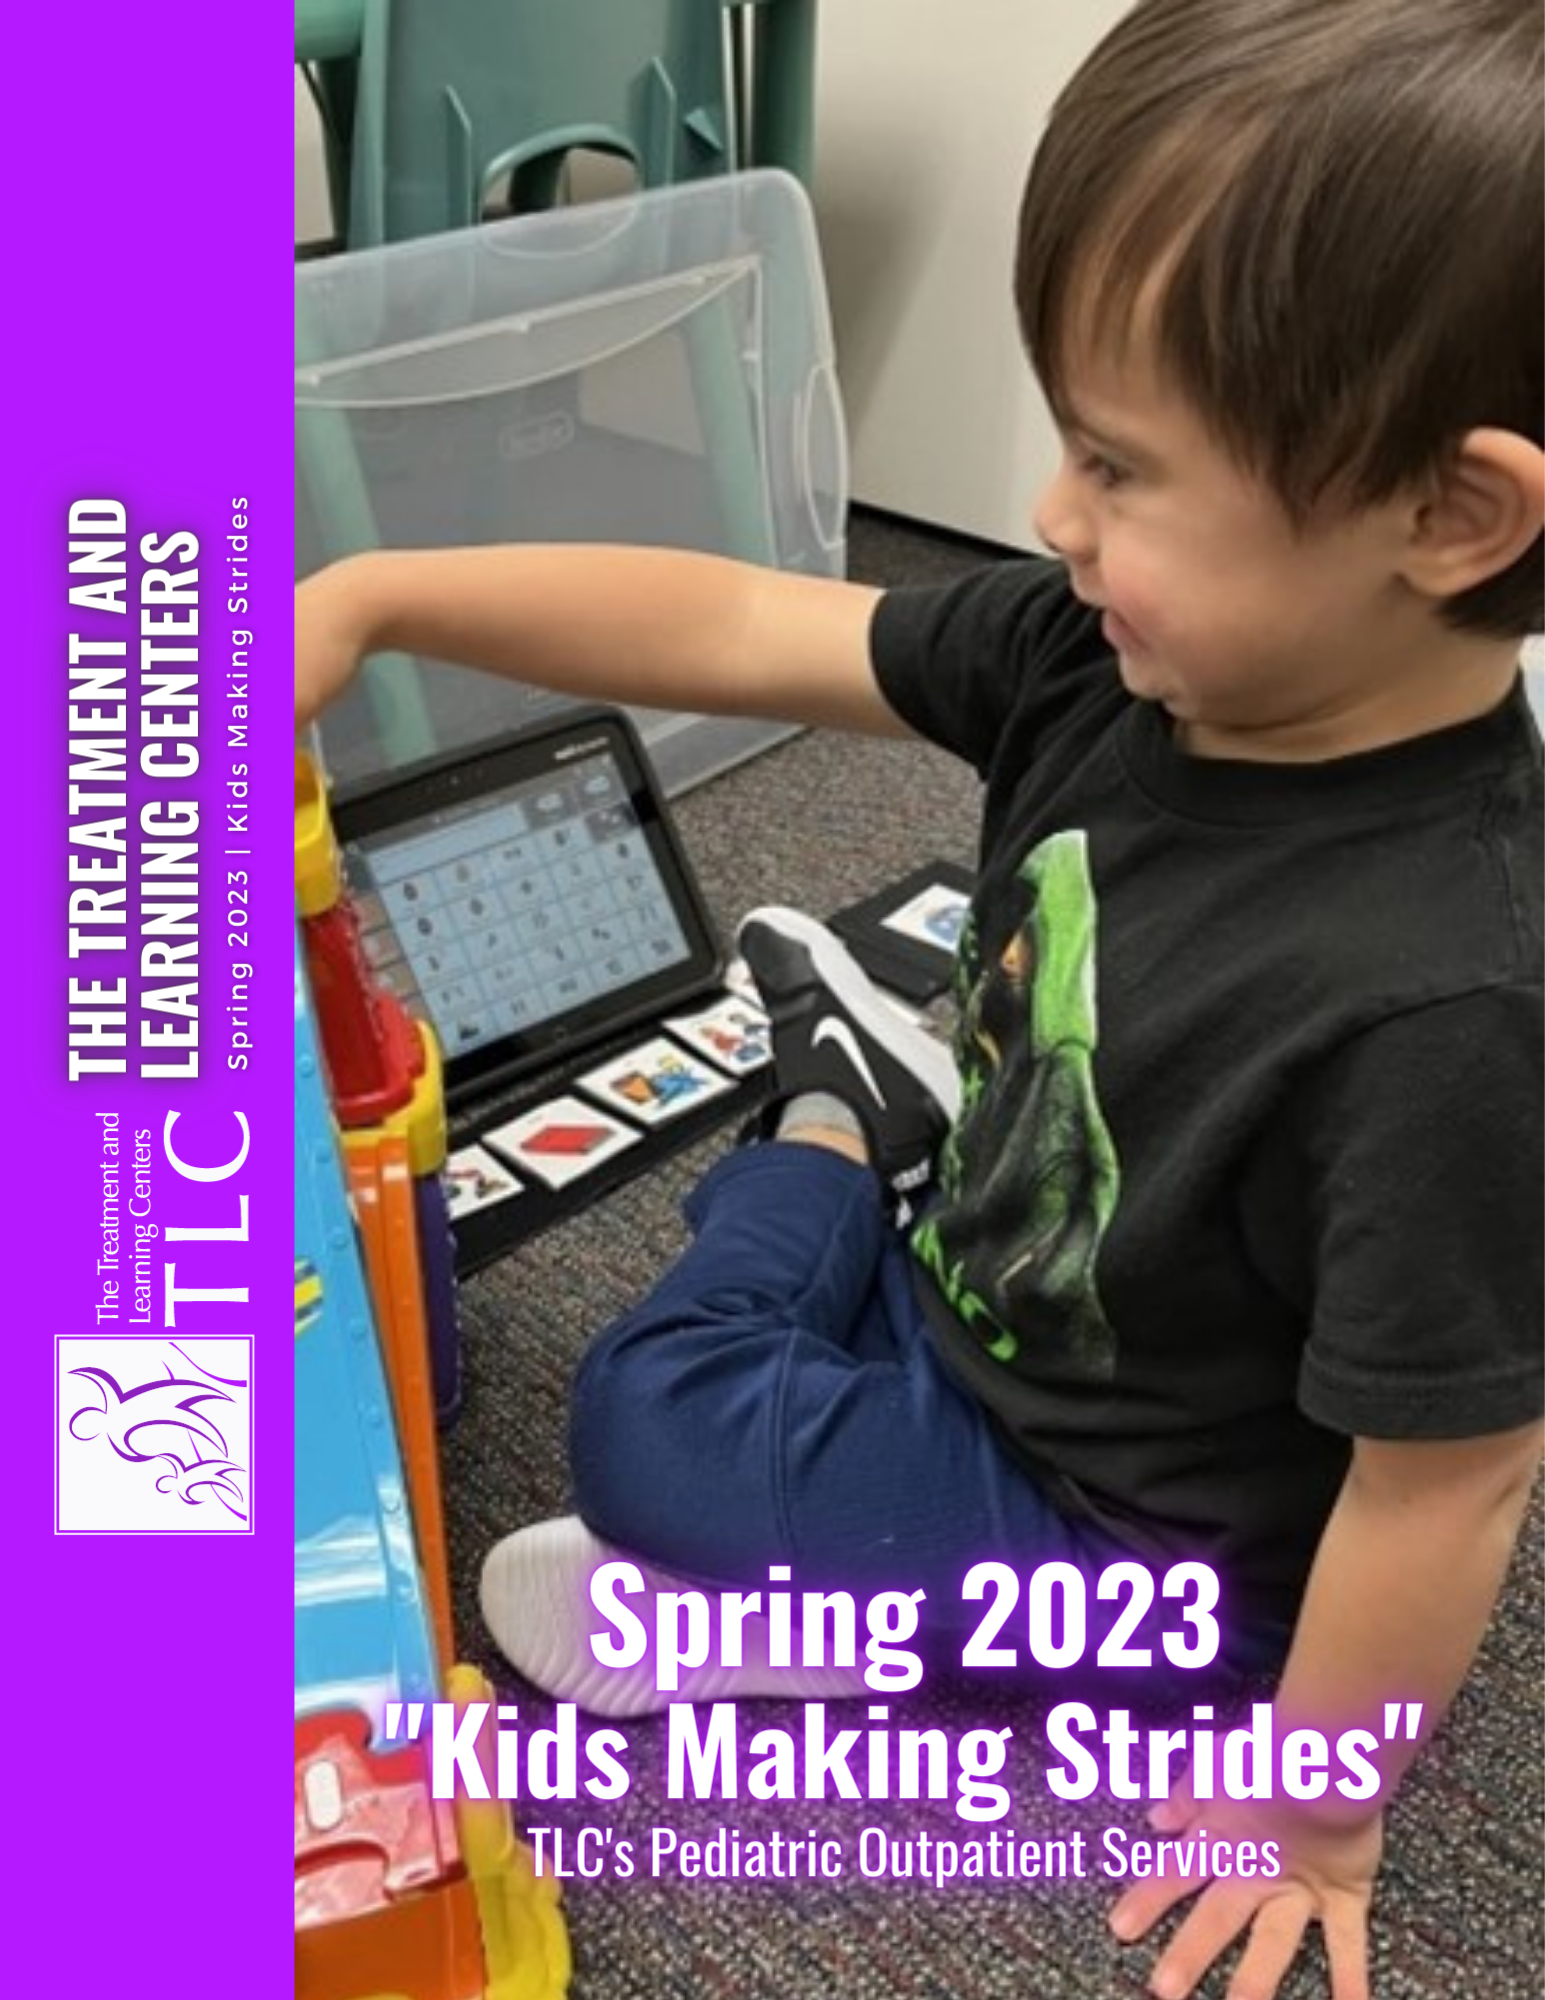 Spring 2023 Kids Making Strides